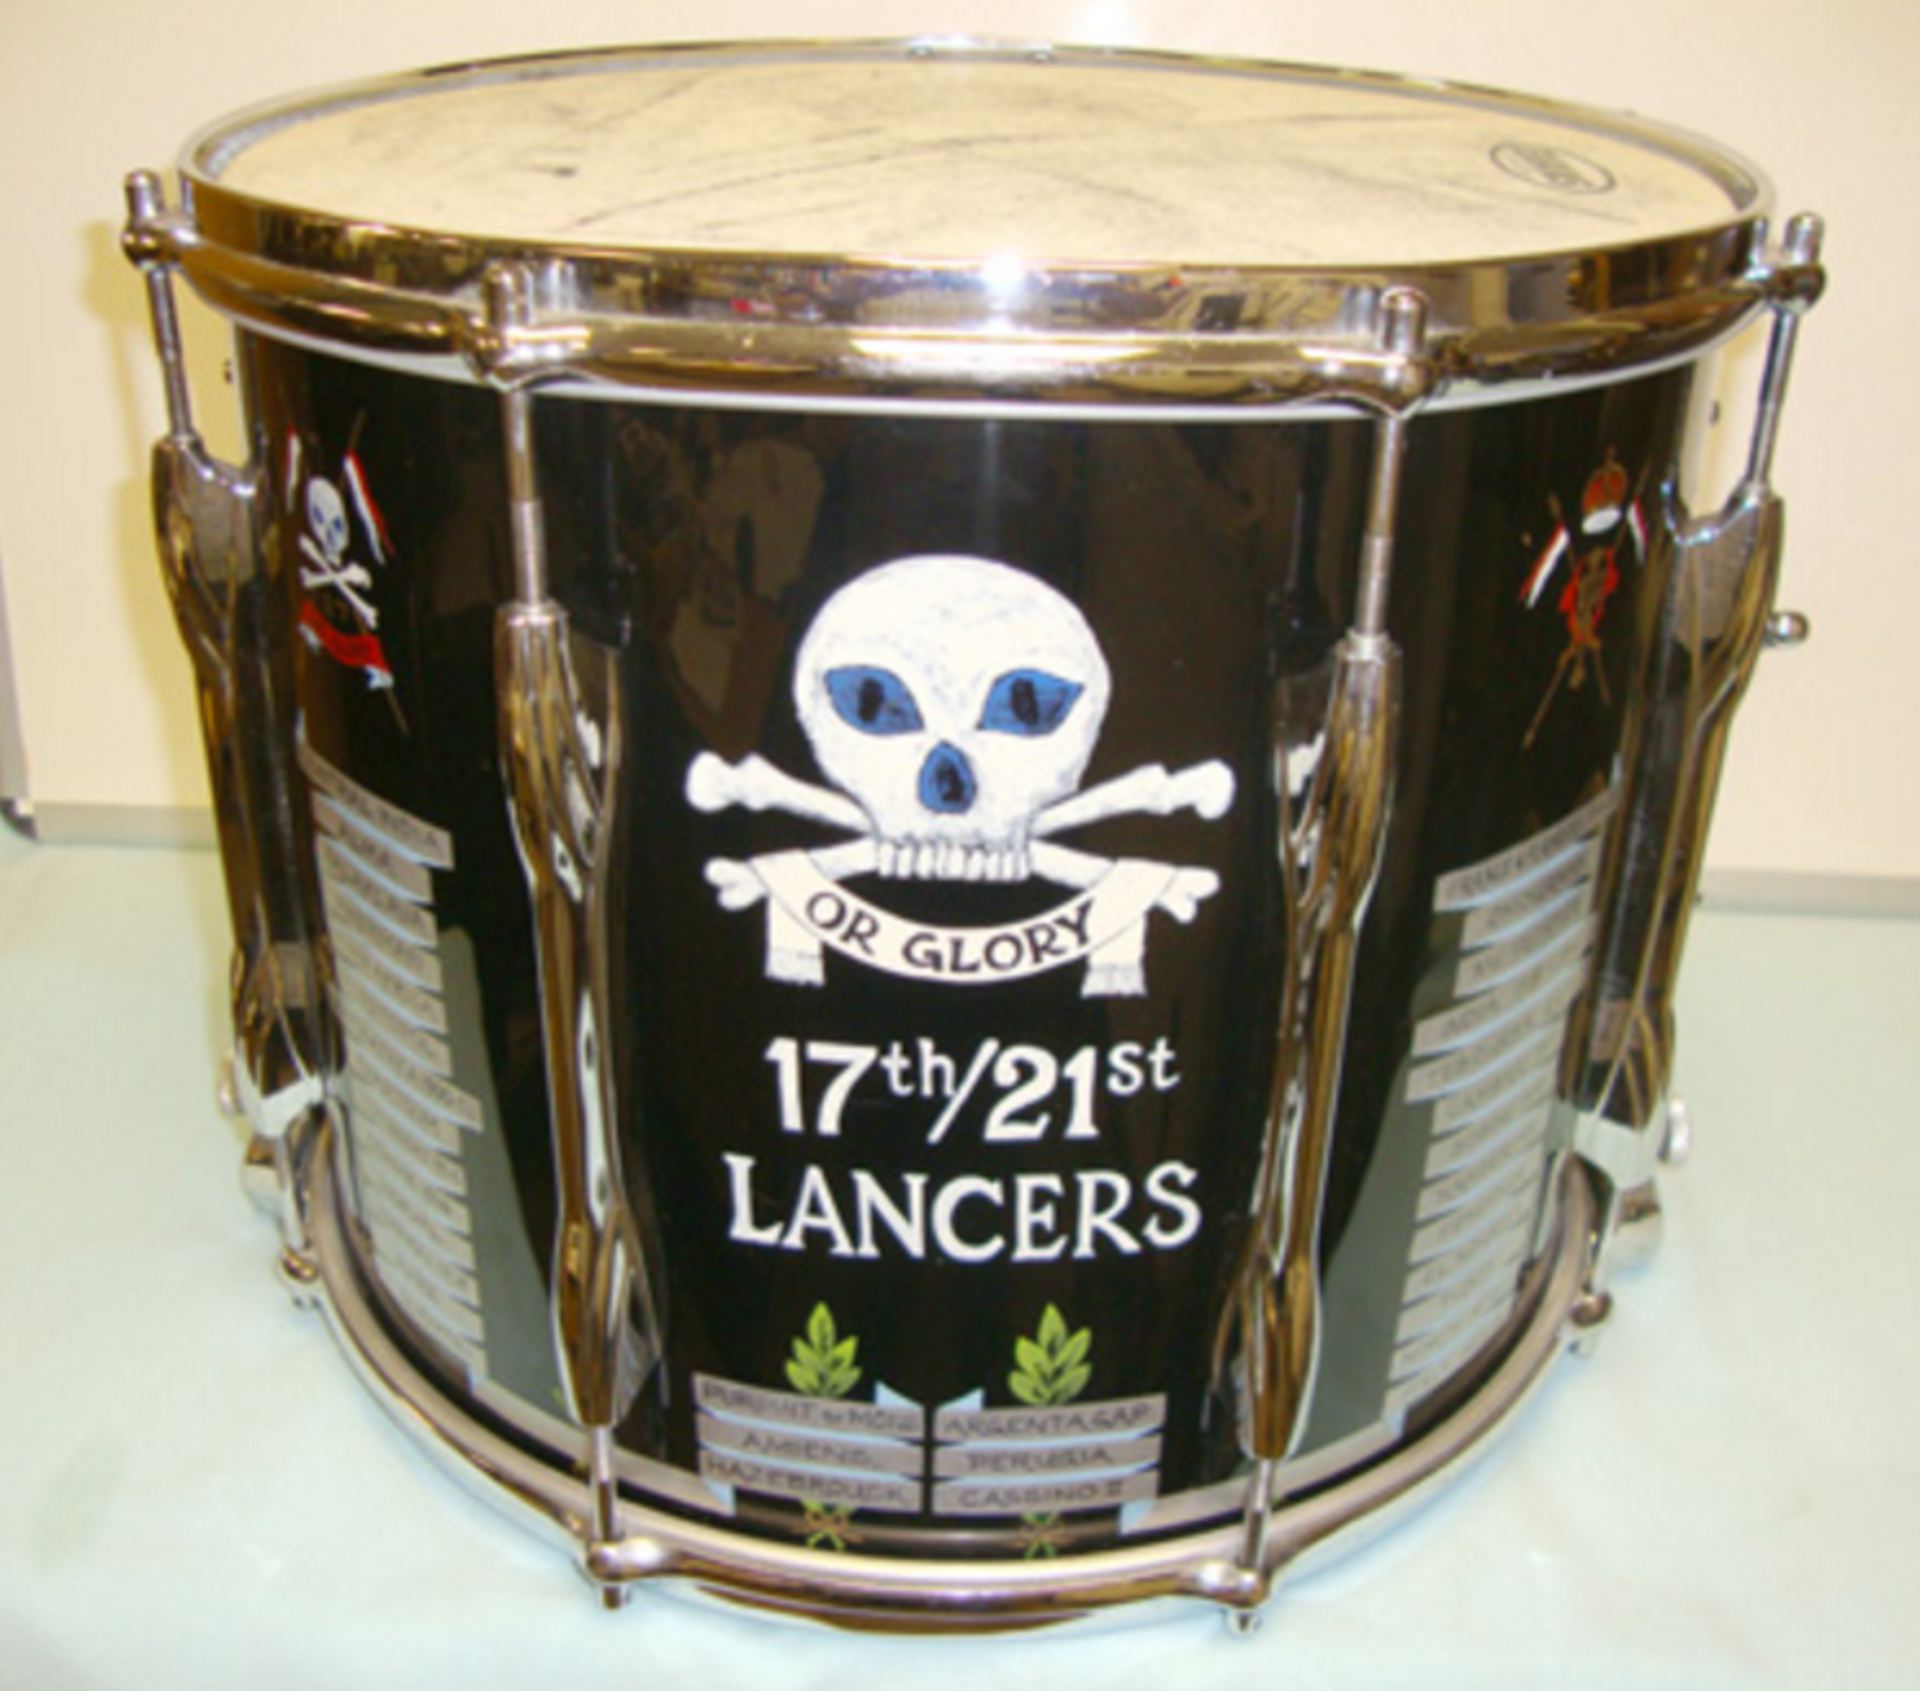 Original 'Premier' 17th/21st Lancers Regimental Side Drum